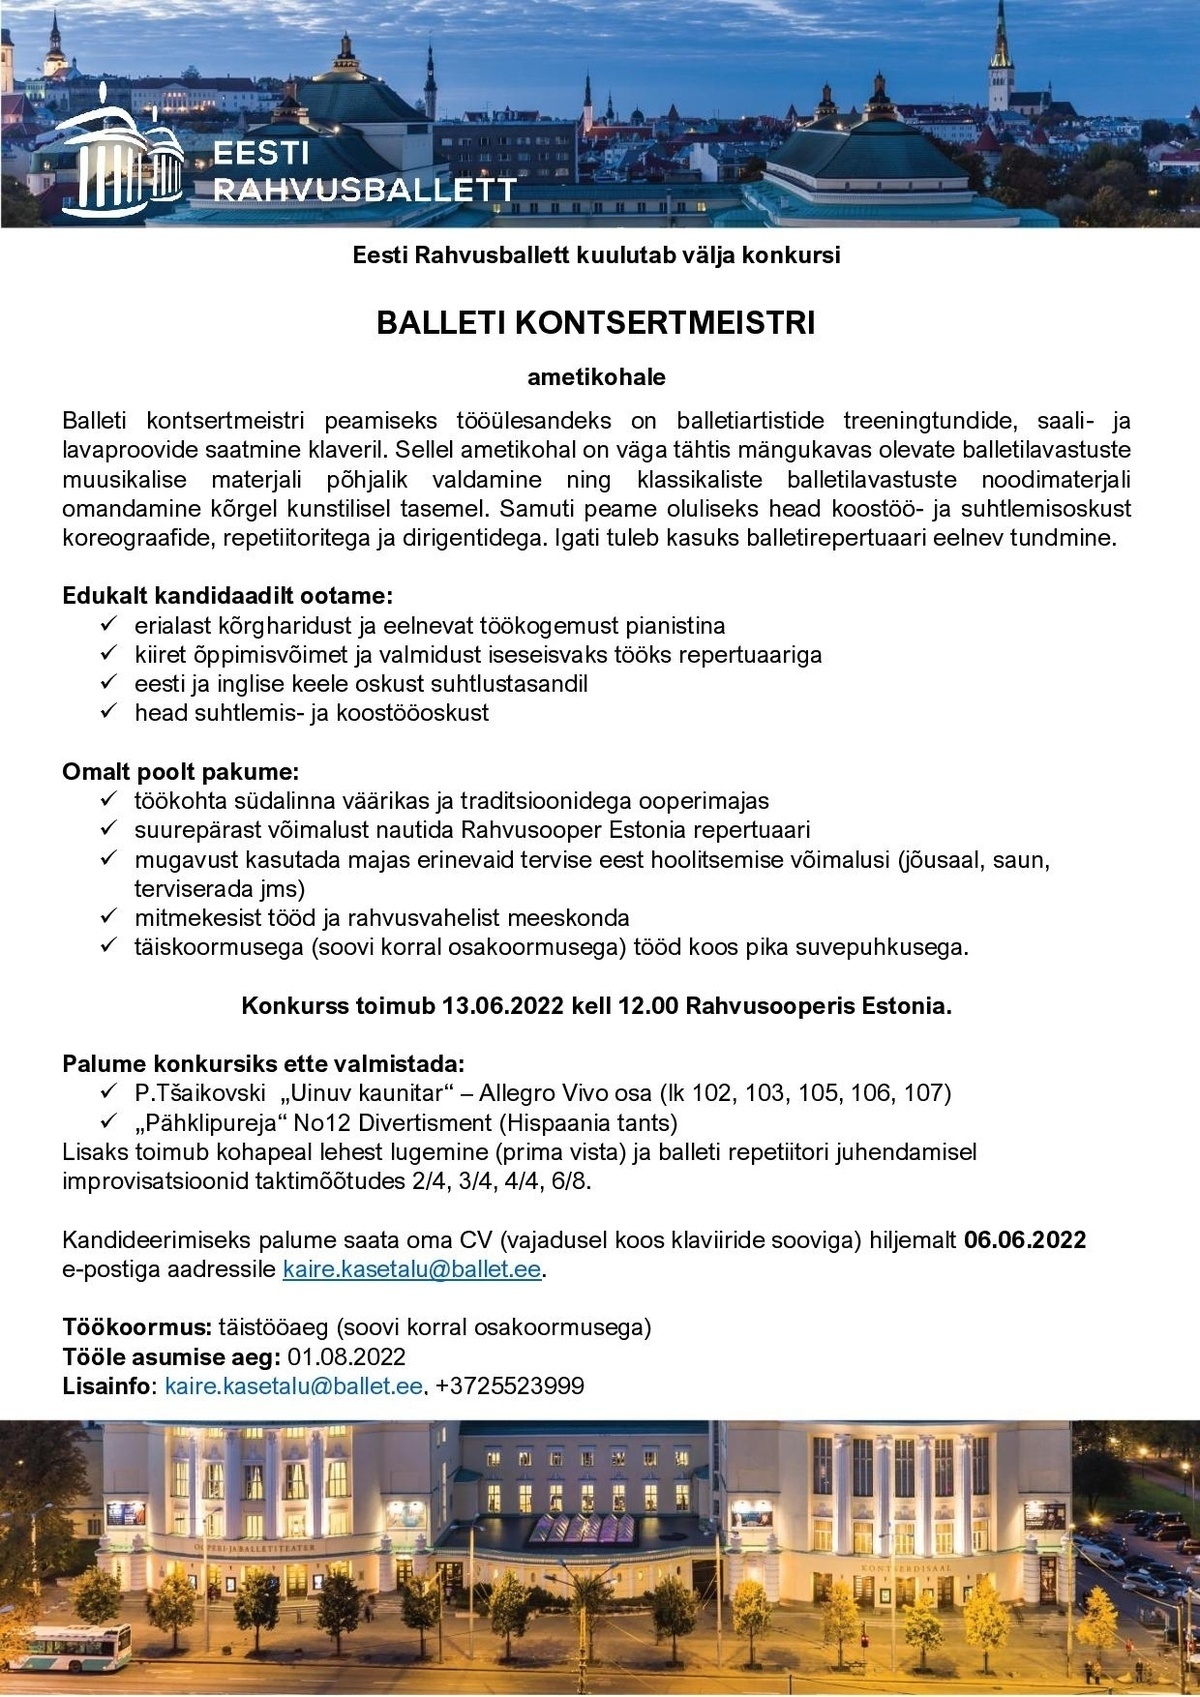 Rahvusooper Estonia Balleti kontsertmeister